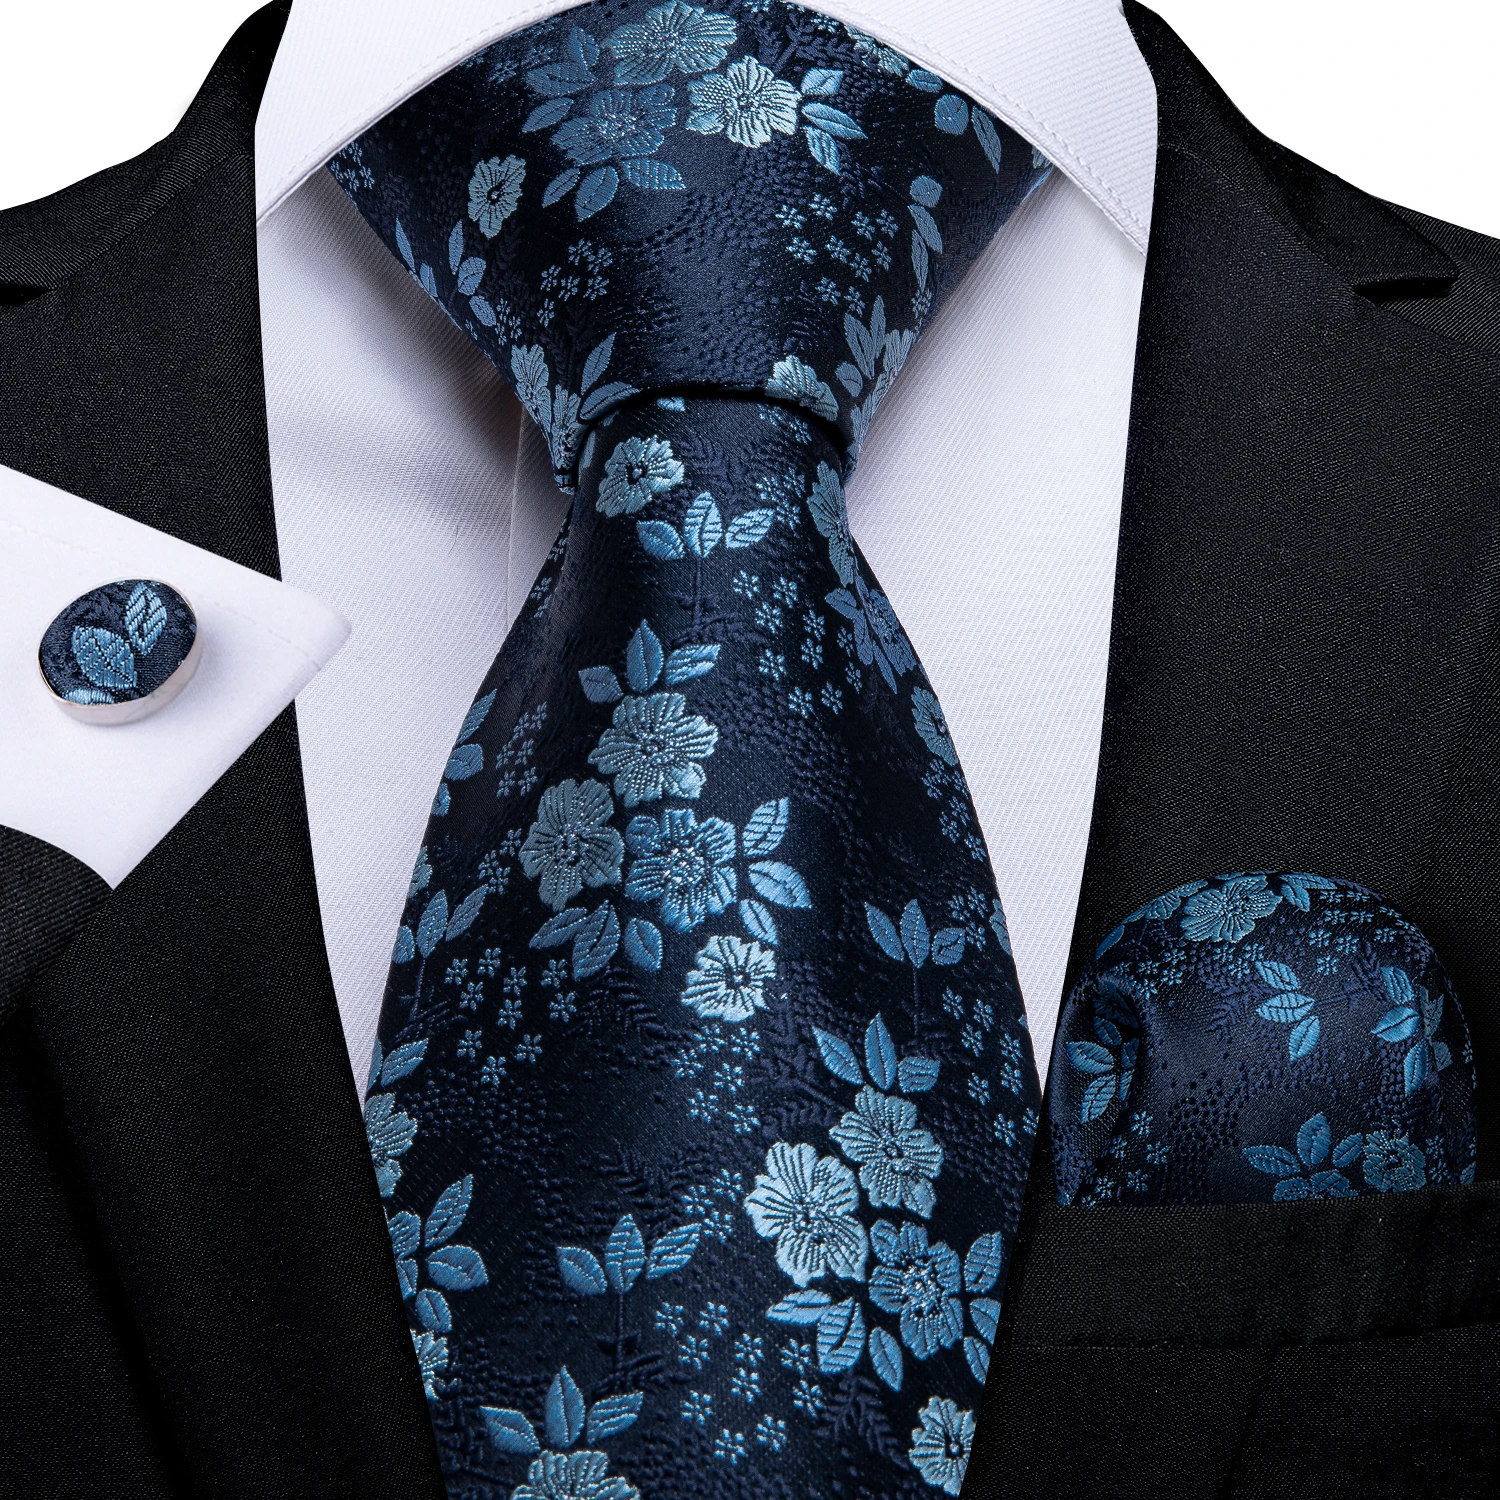 Gift Men Tie Navy Blue Floral Silk Wedding Tie For Men DiBanGu Design Hanky Cufflink Quality Men Tie Set Fashion Dropshipping